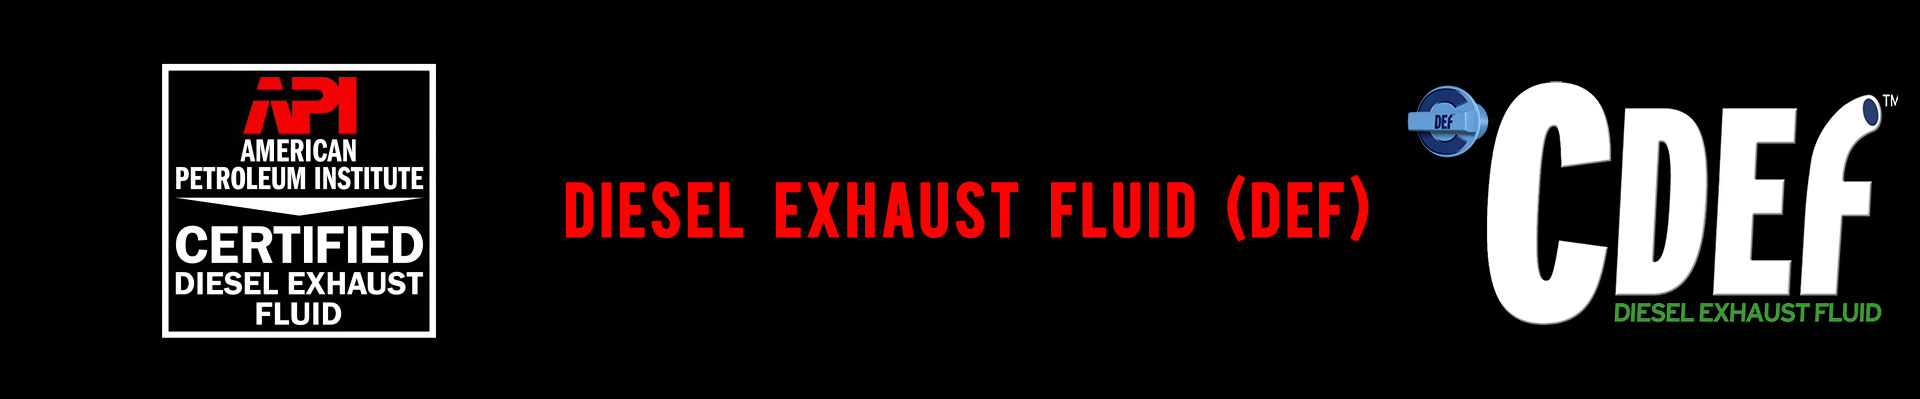 sutton diesel exhaust fluid def